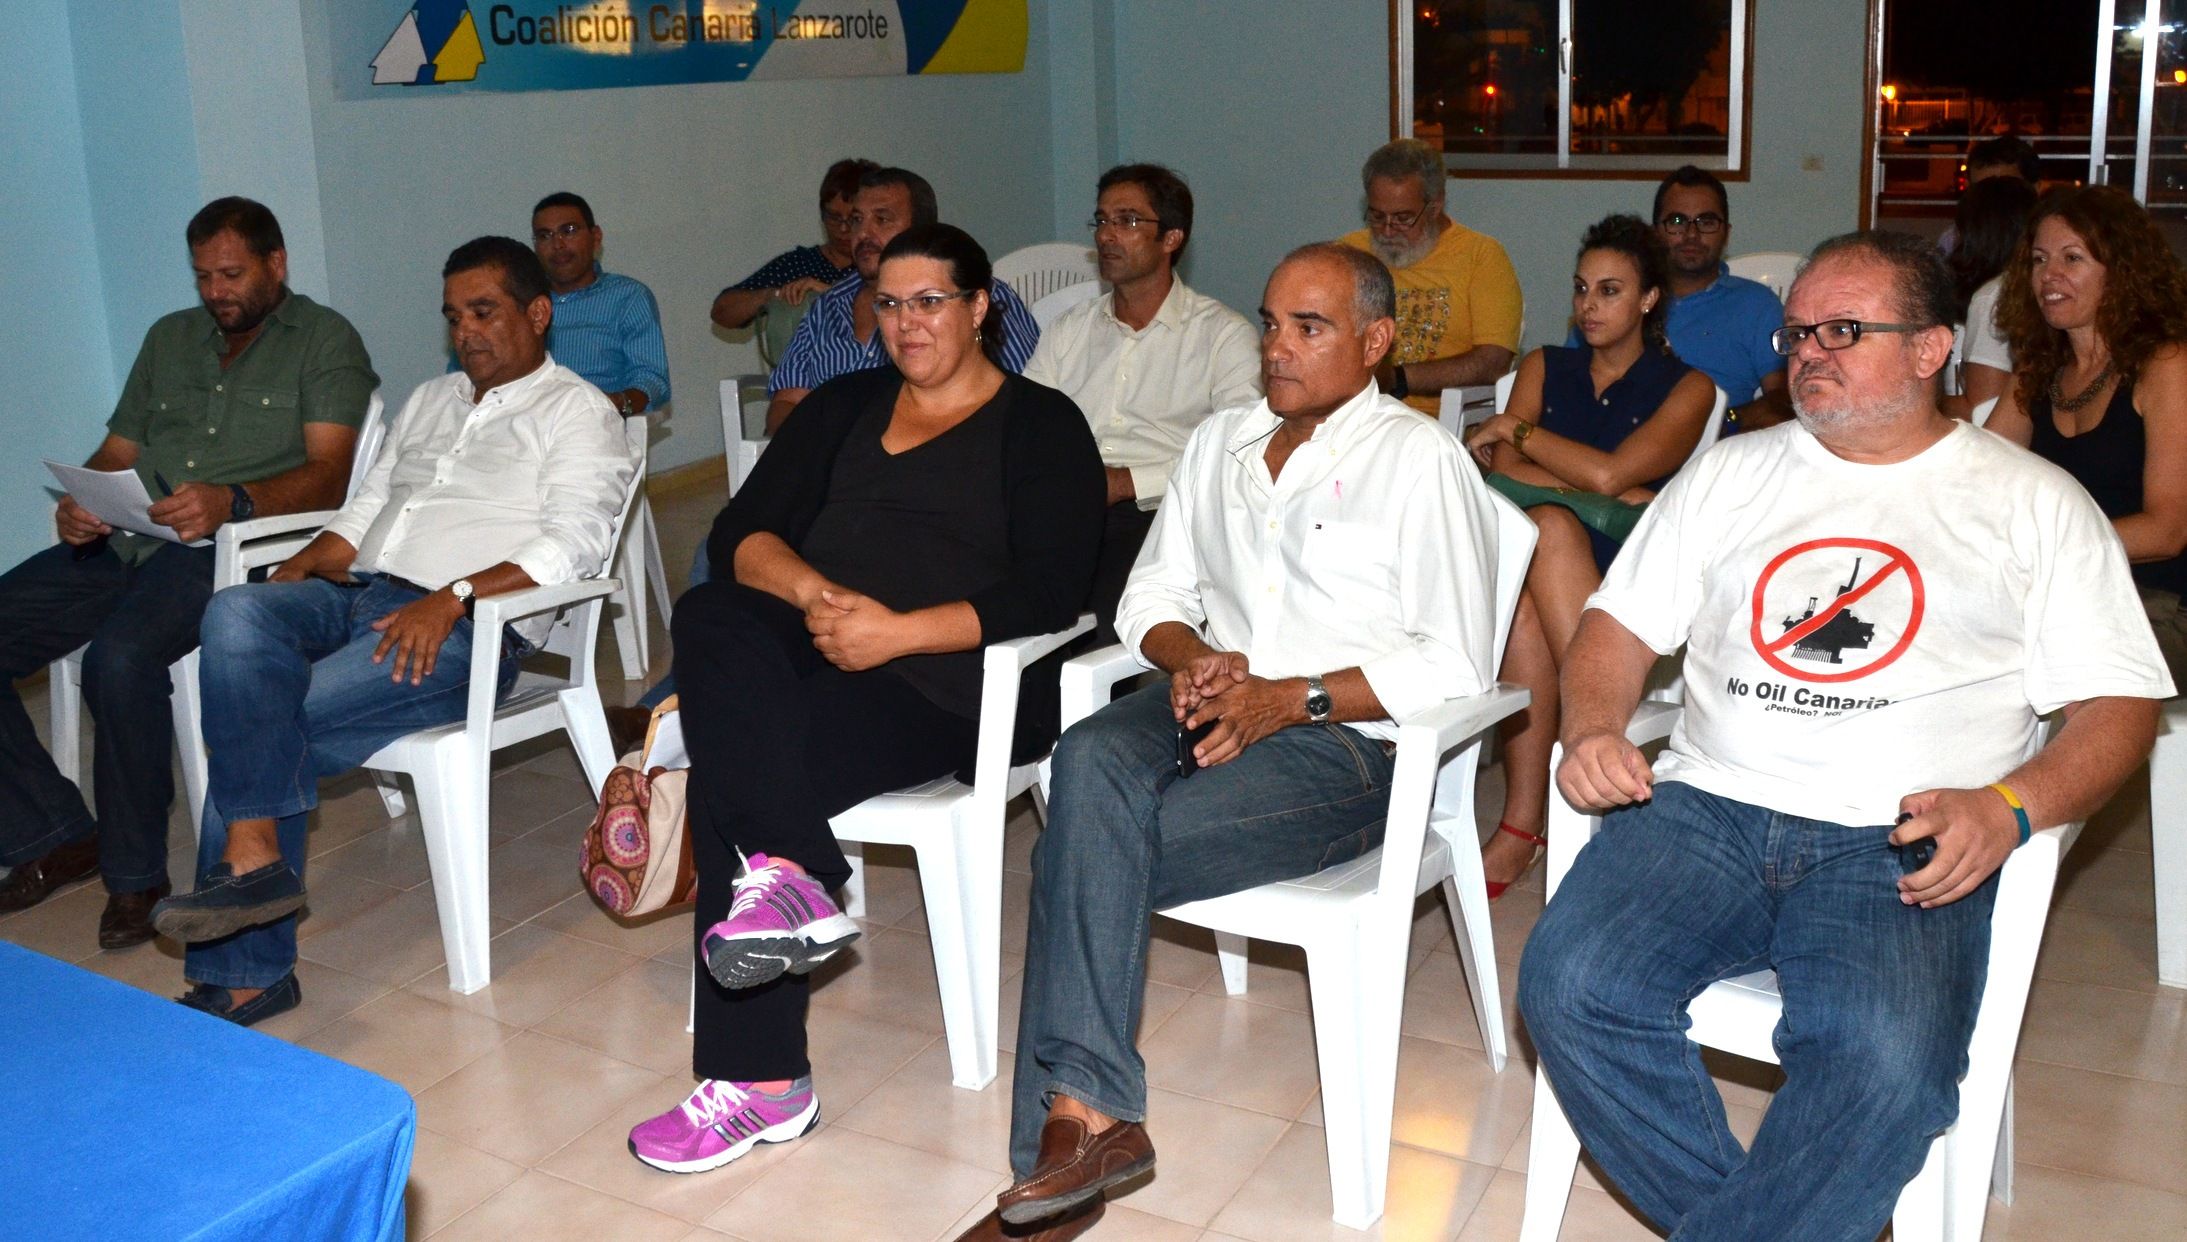 La Ejecutiva Insular de Coalición Canaria instaura una gestora en Haría